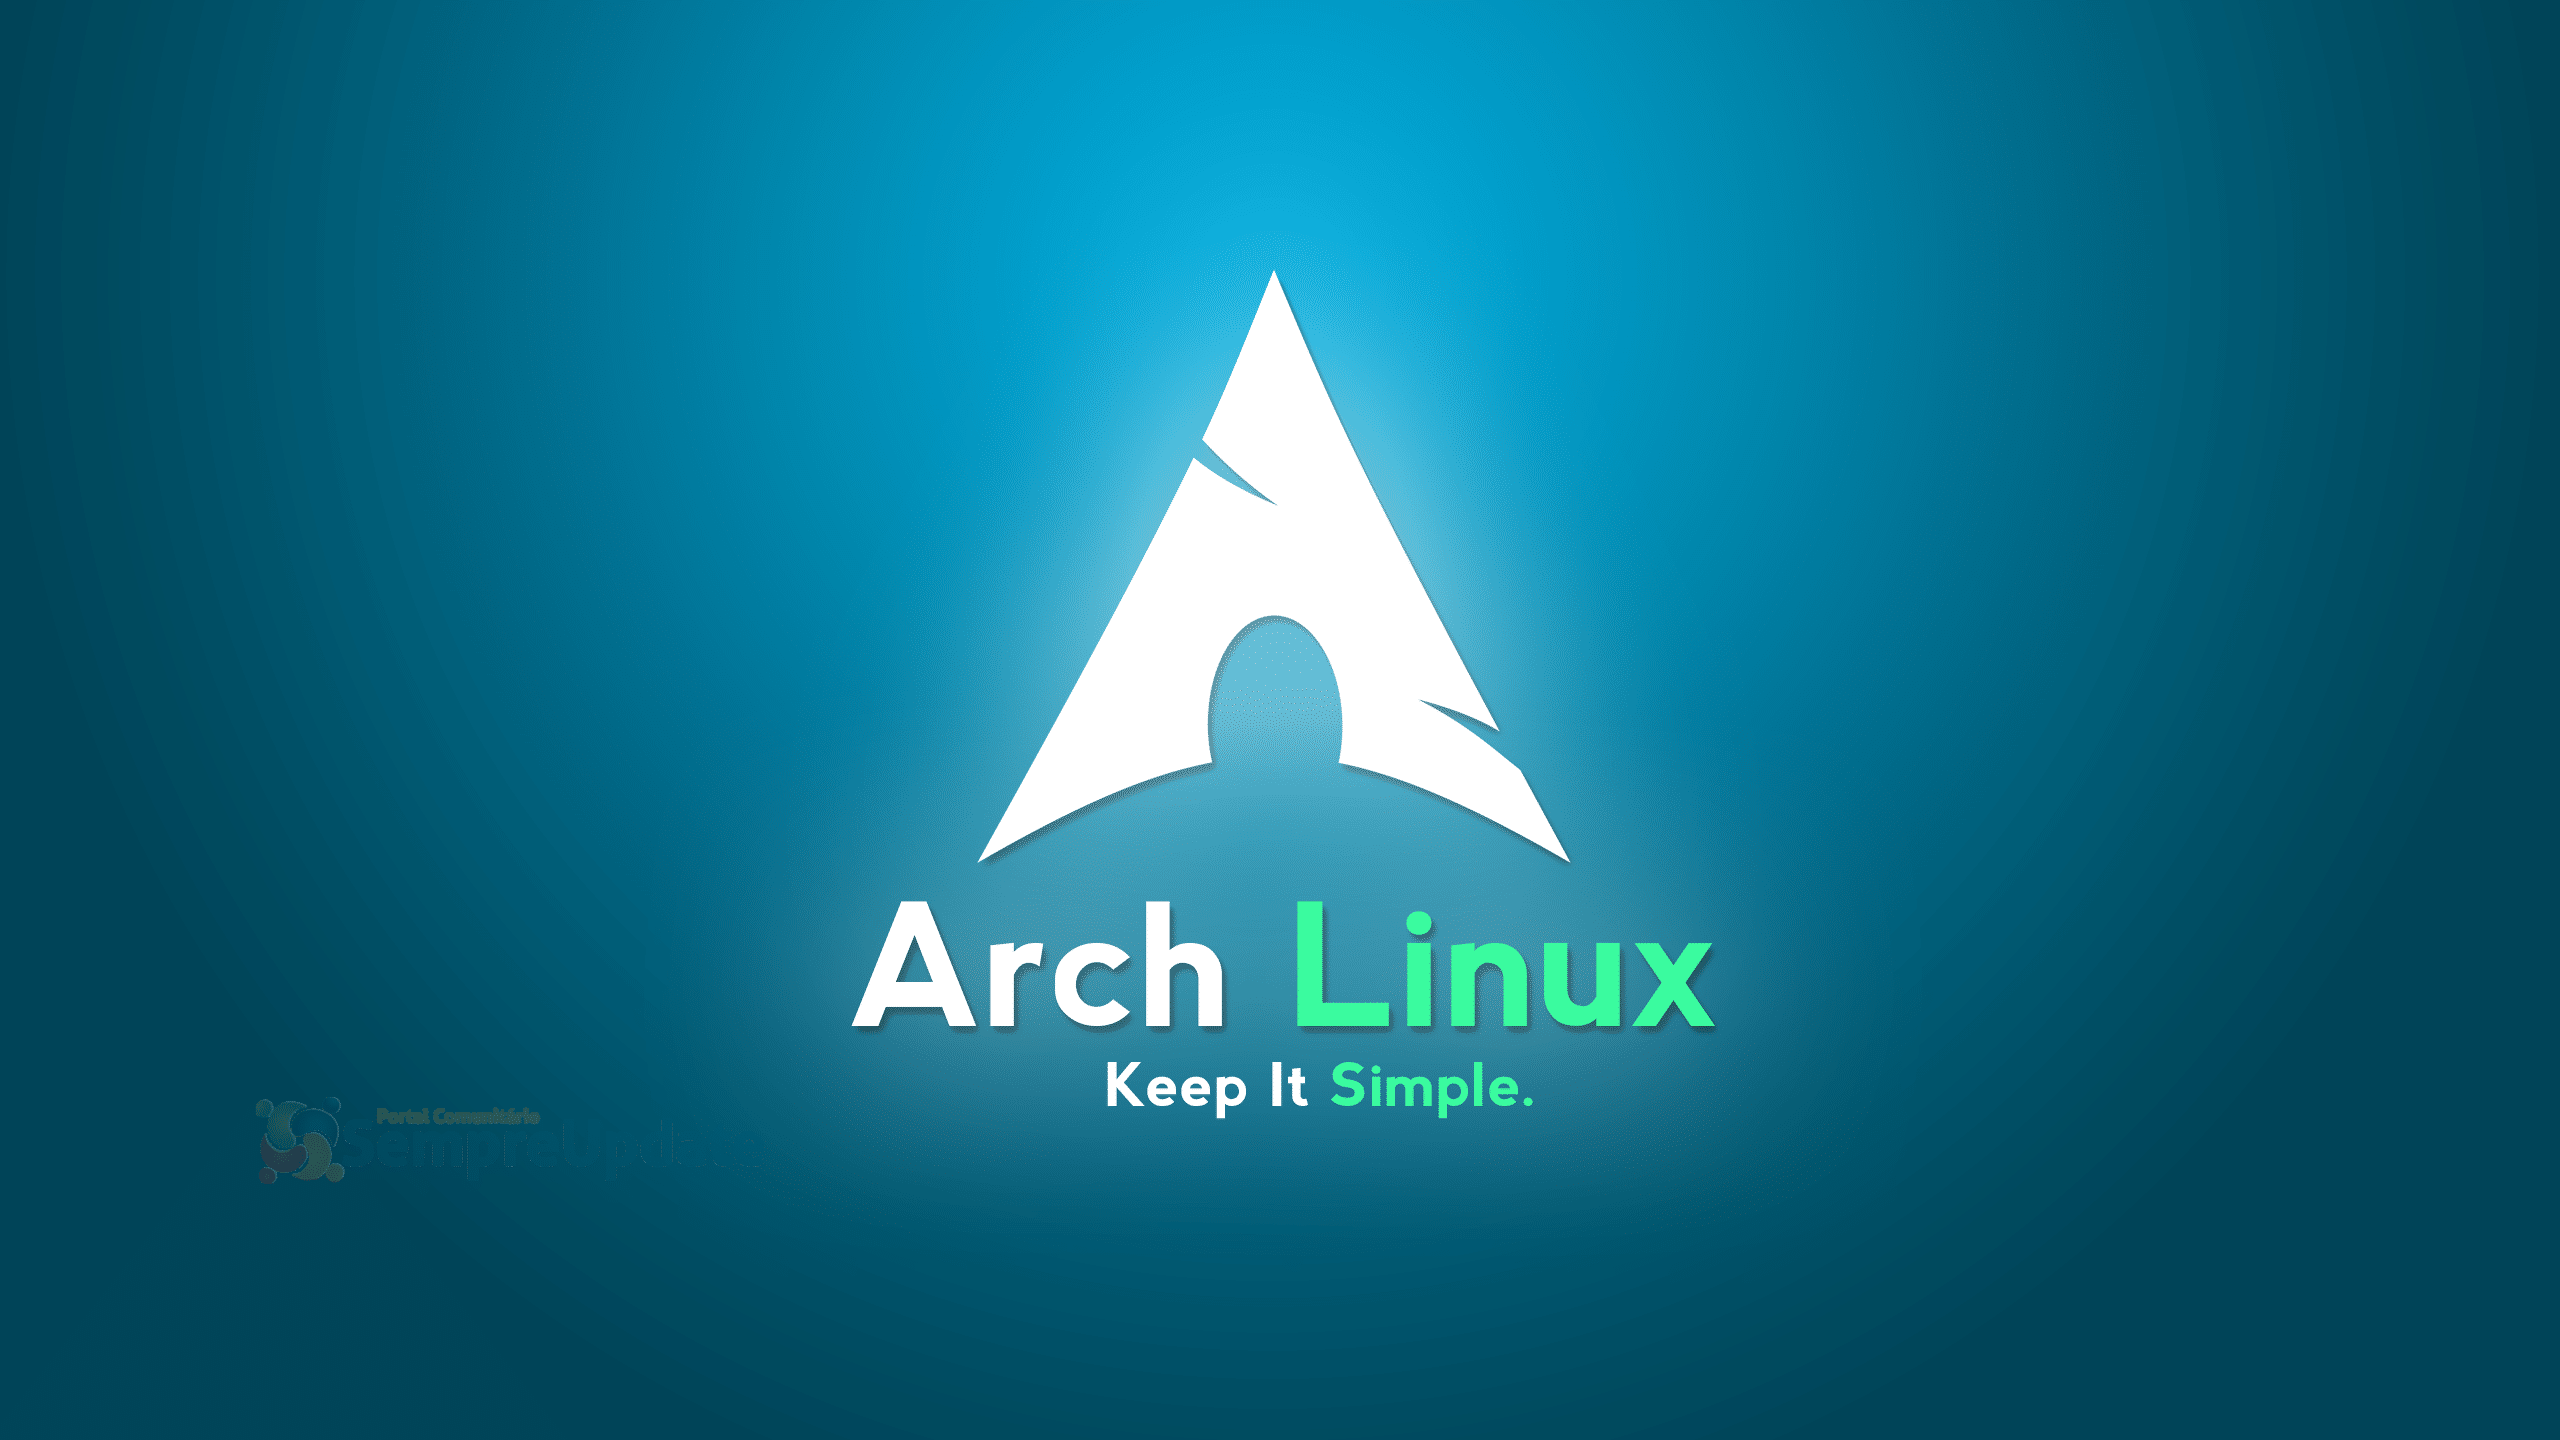 Arch Linux estreia primeira versão com Kernel 5.7